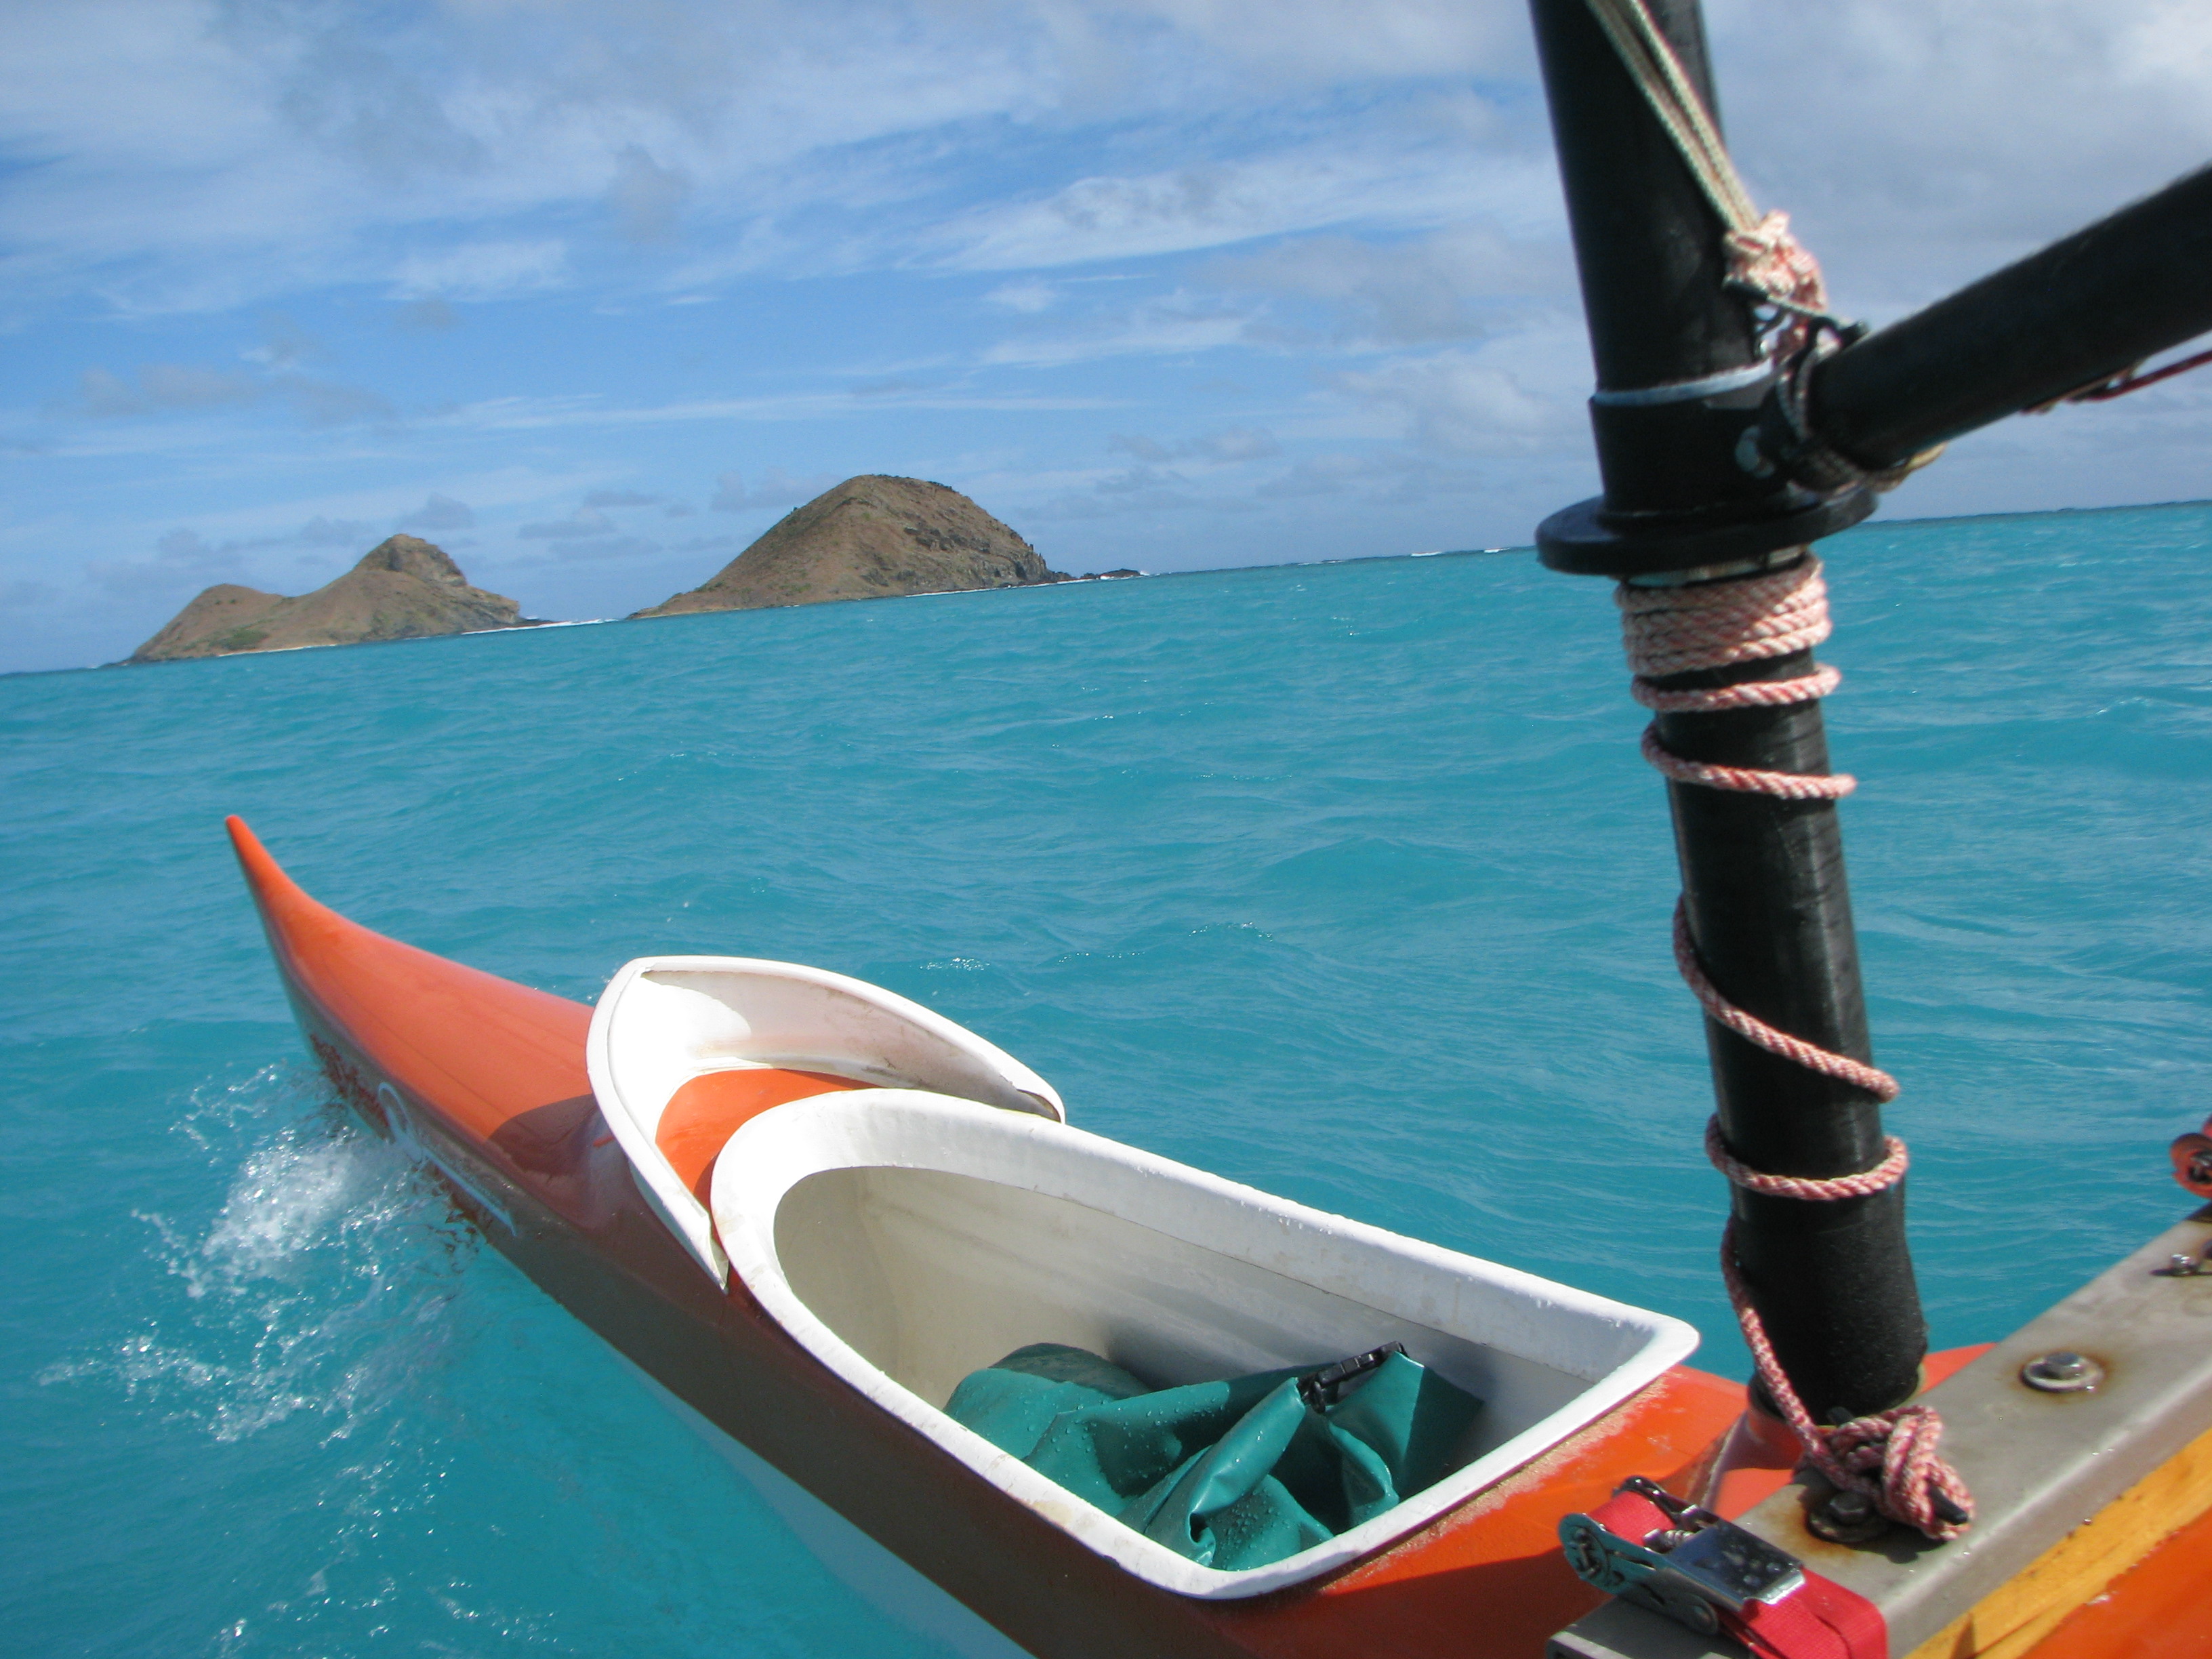 ラニカイの沖に浮かぶ島に上陸してみる | スマートリップ・ハワイ 